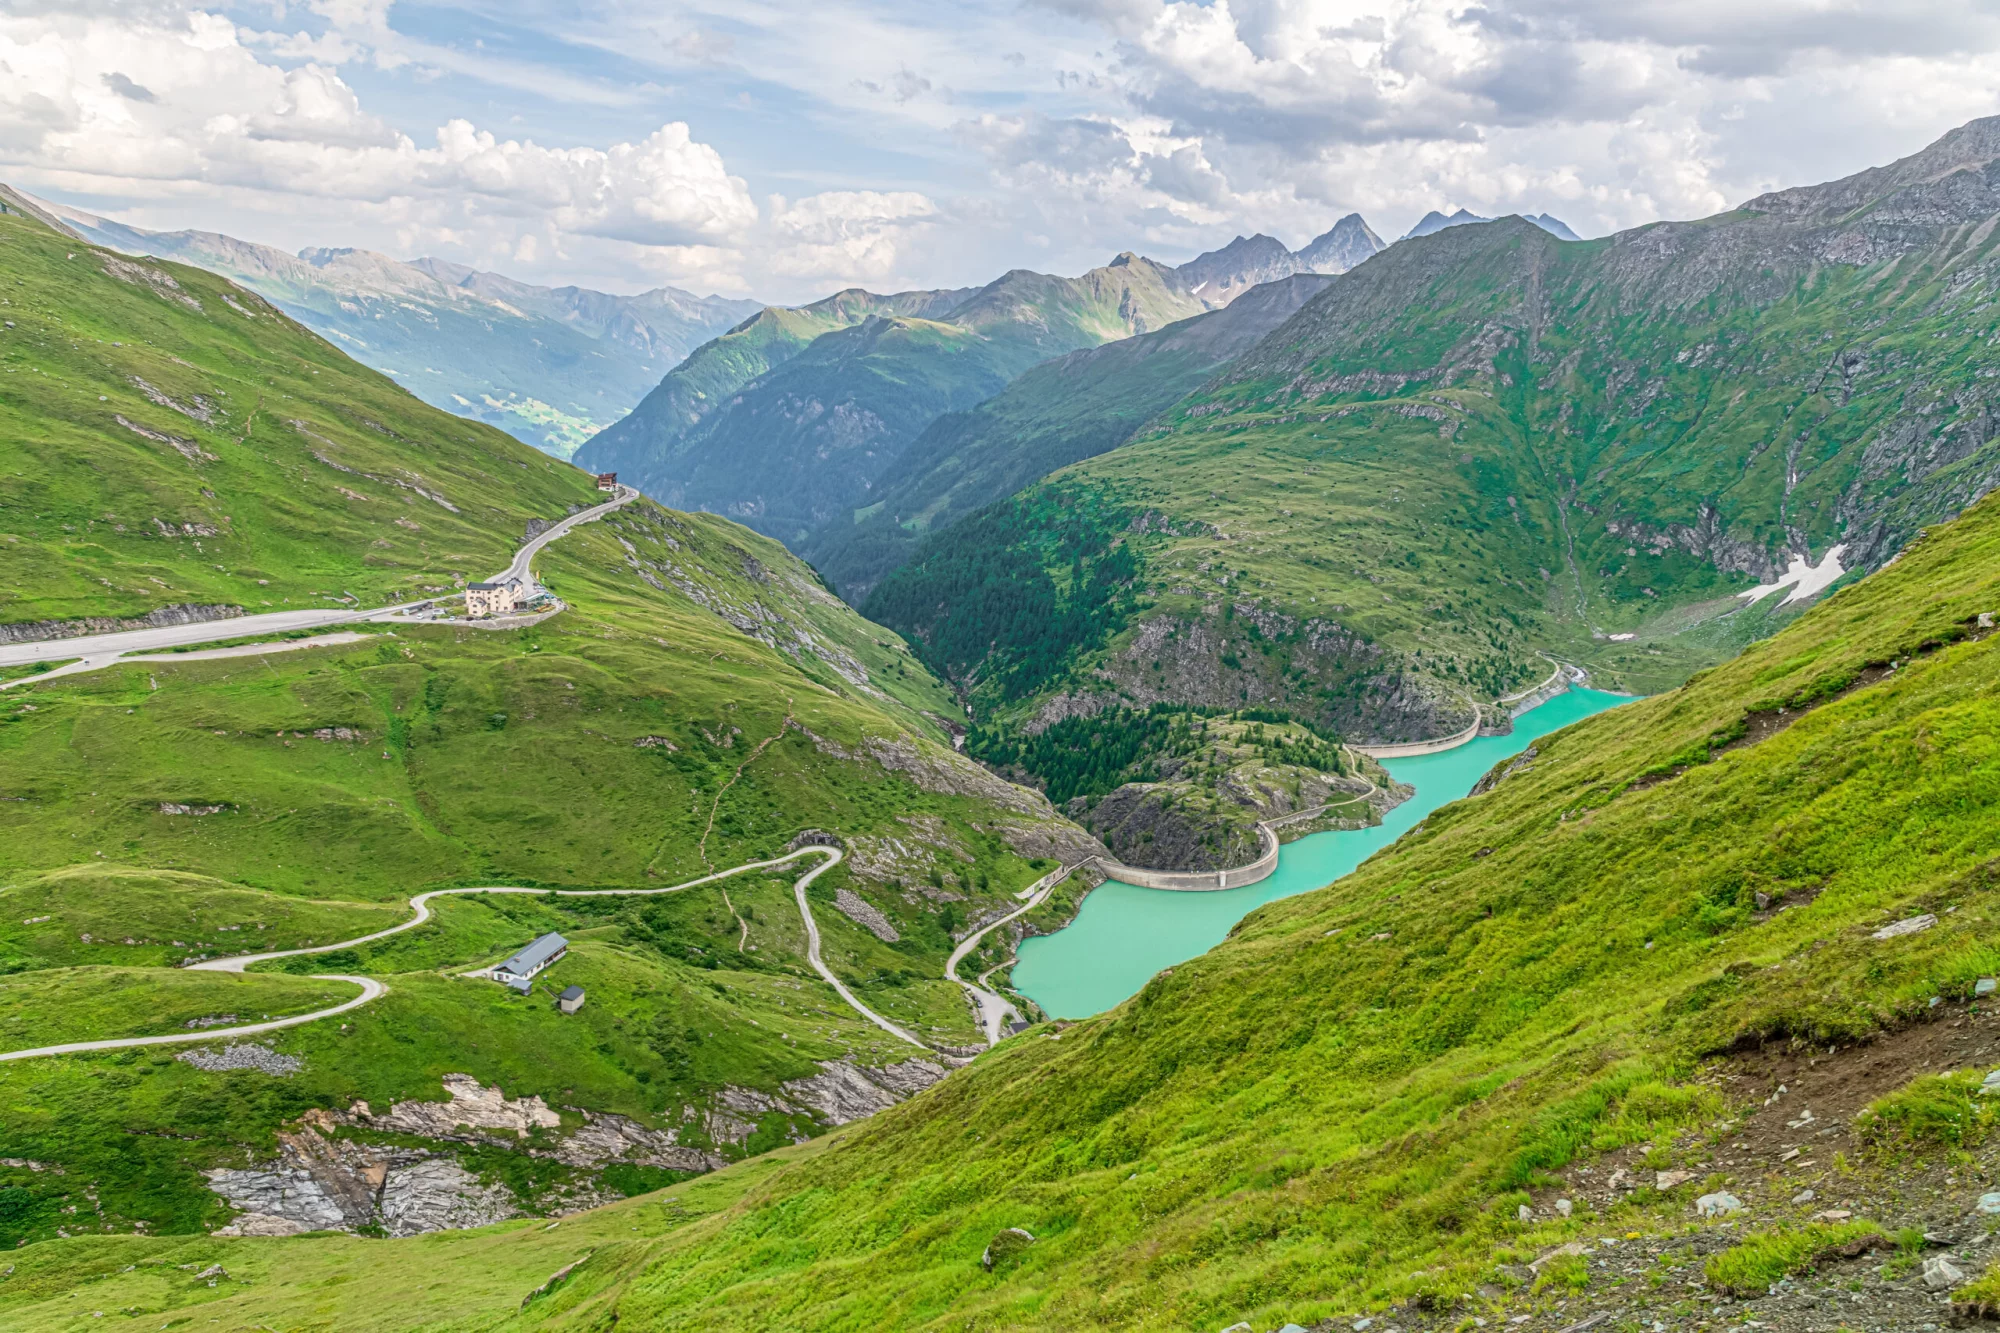 Blick auf den künstlichen See Margaritze in der Nähe der Großglockner Hochalpen Straße in den Hohen Tauern in den Alpen in Österreich